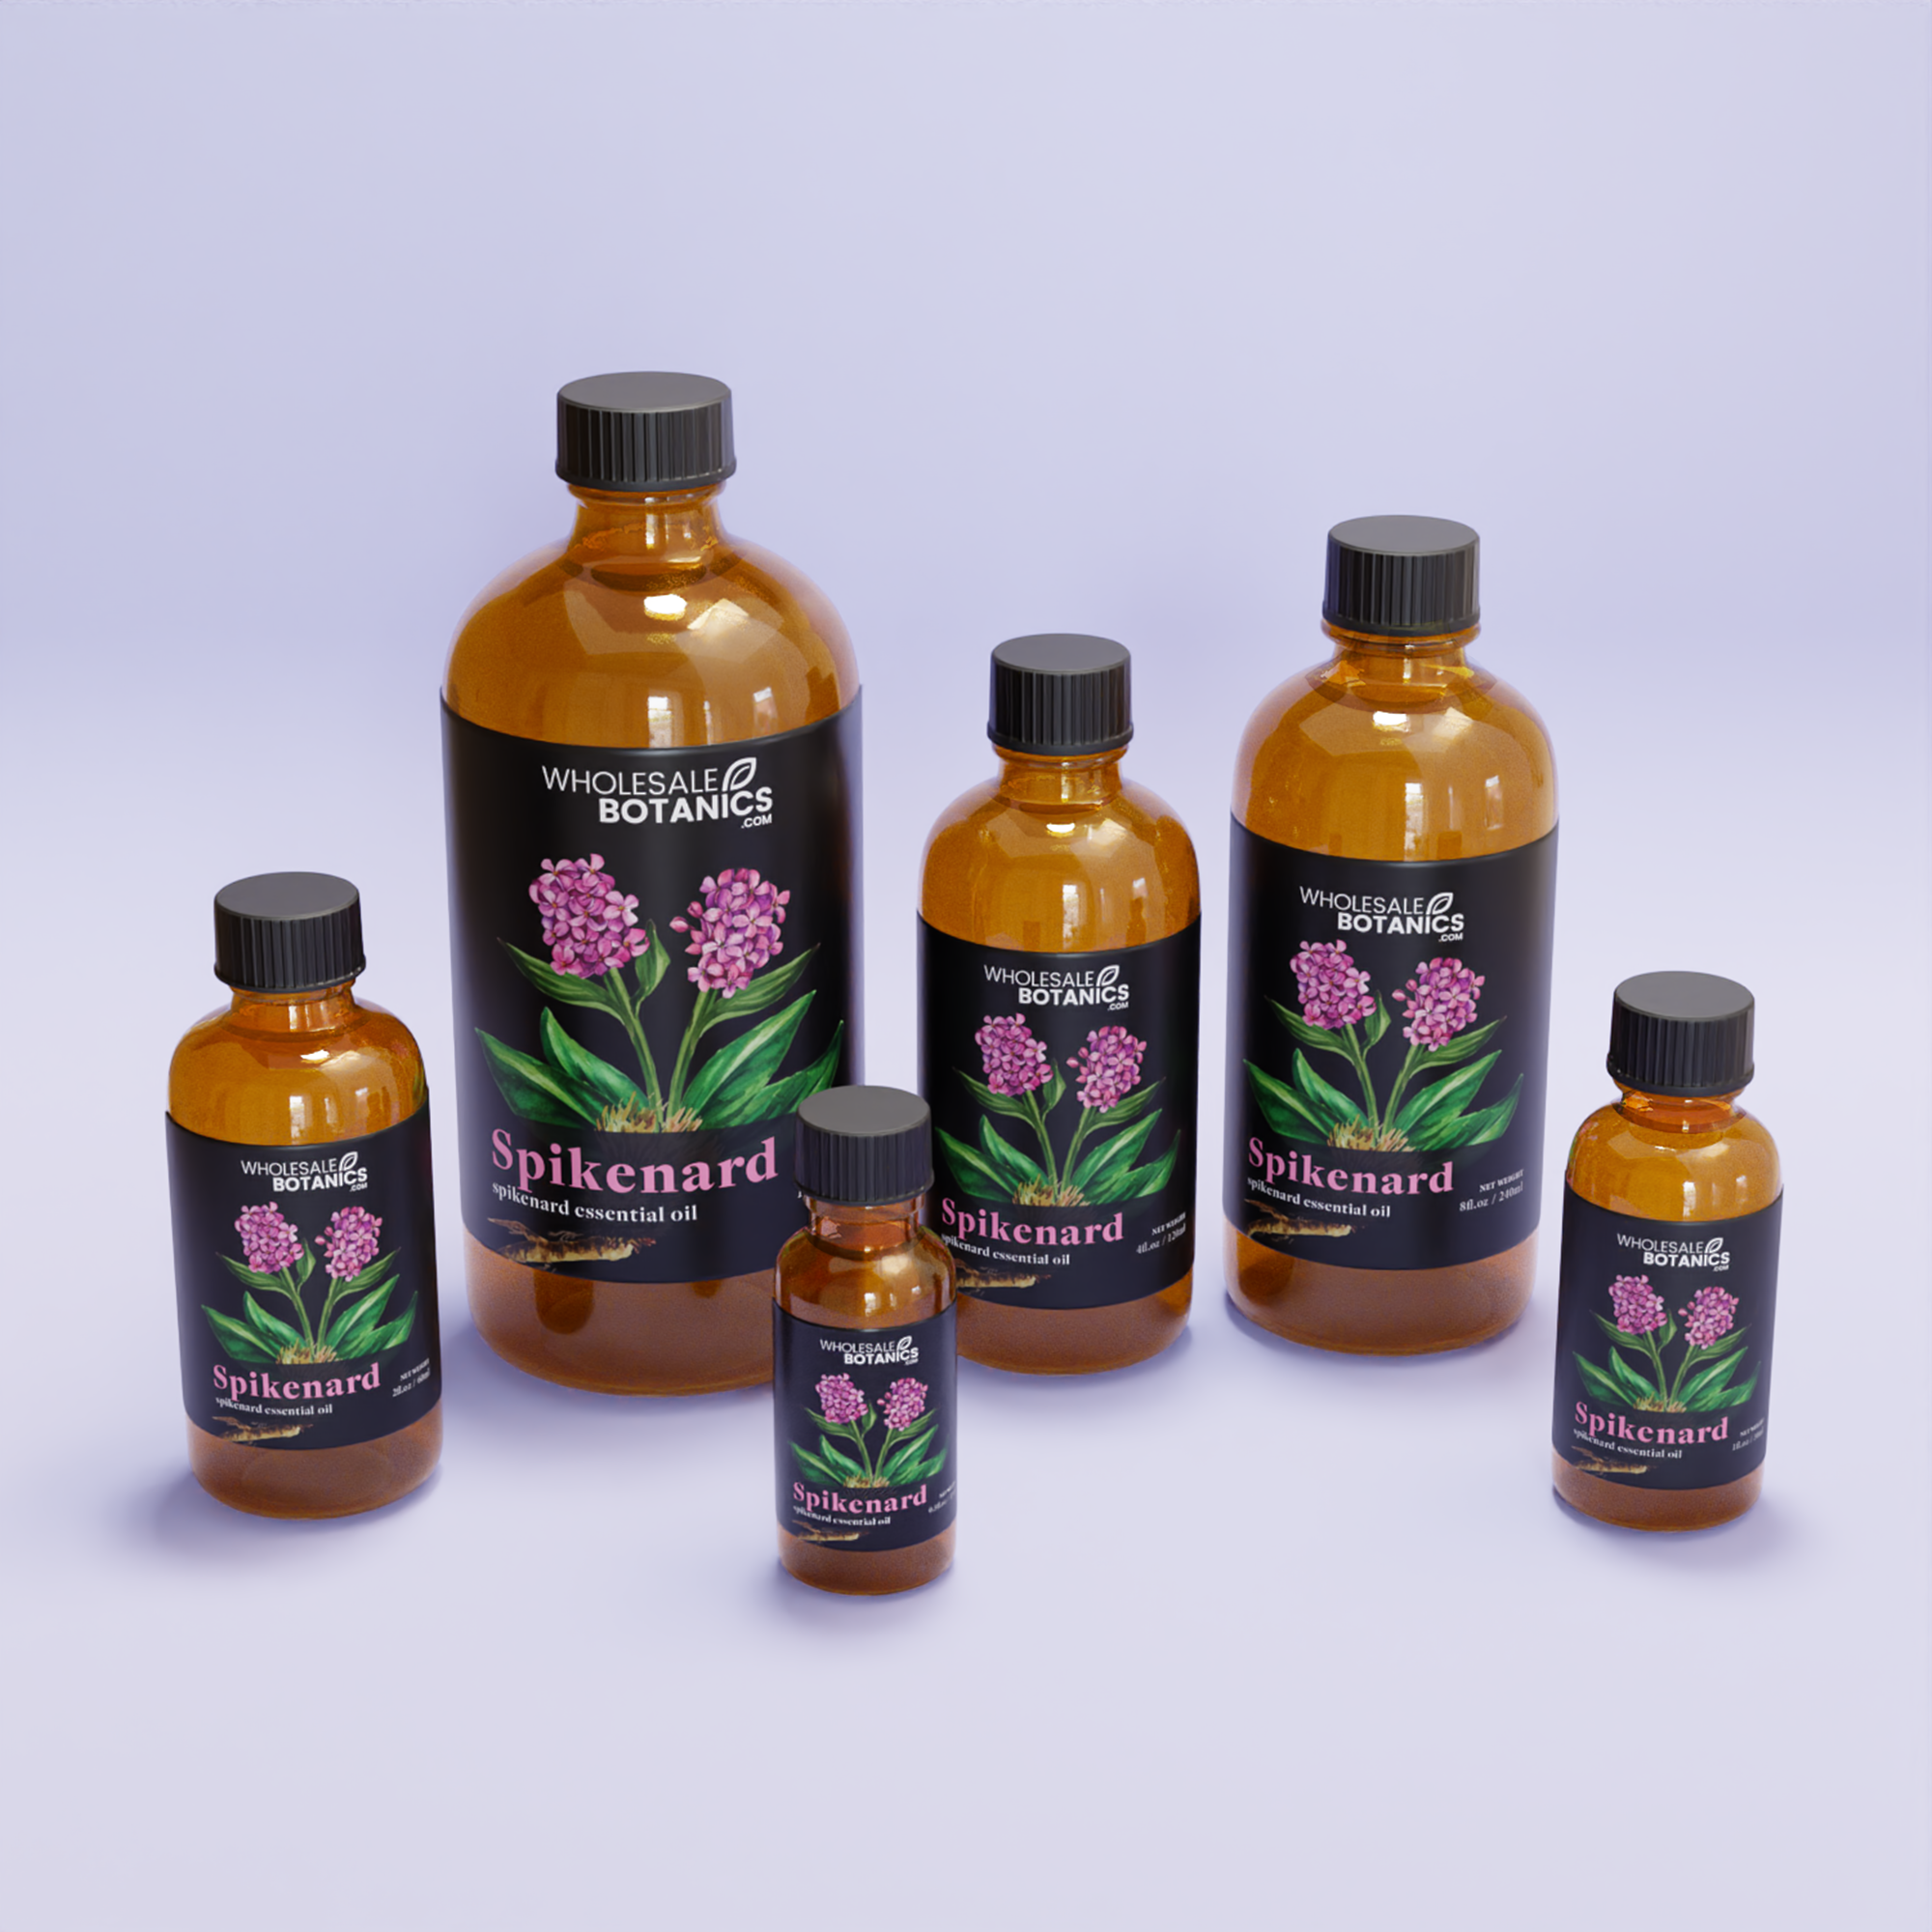 Spikenard Essential Oil - Botanical